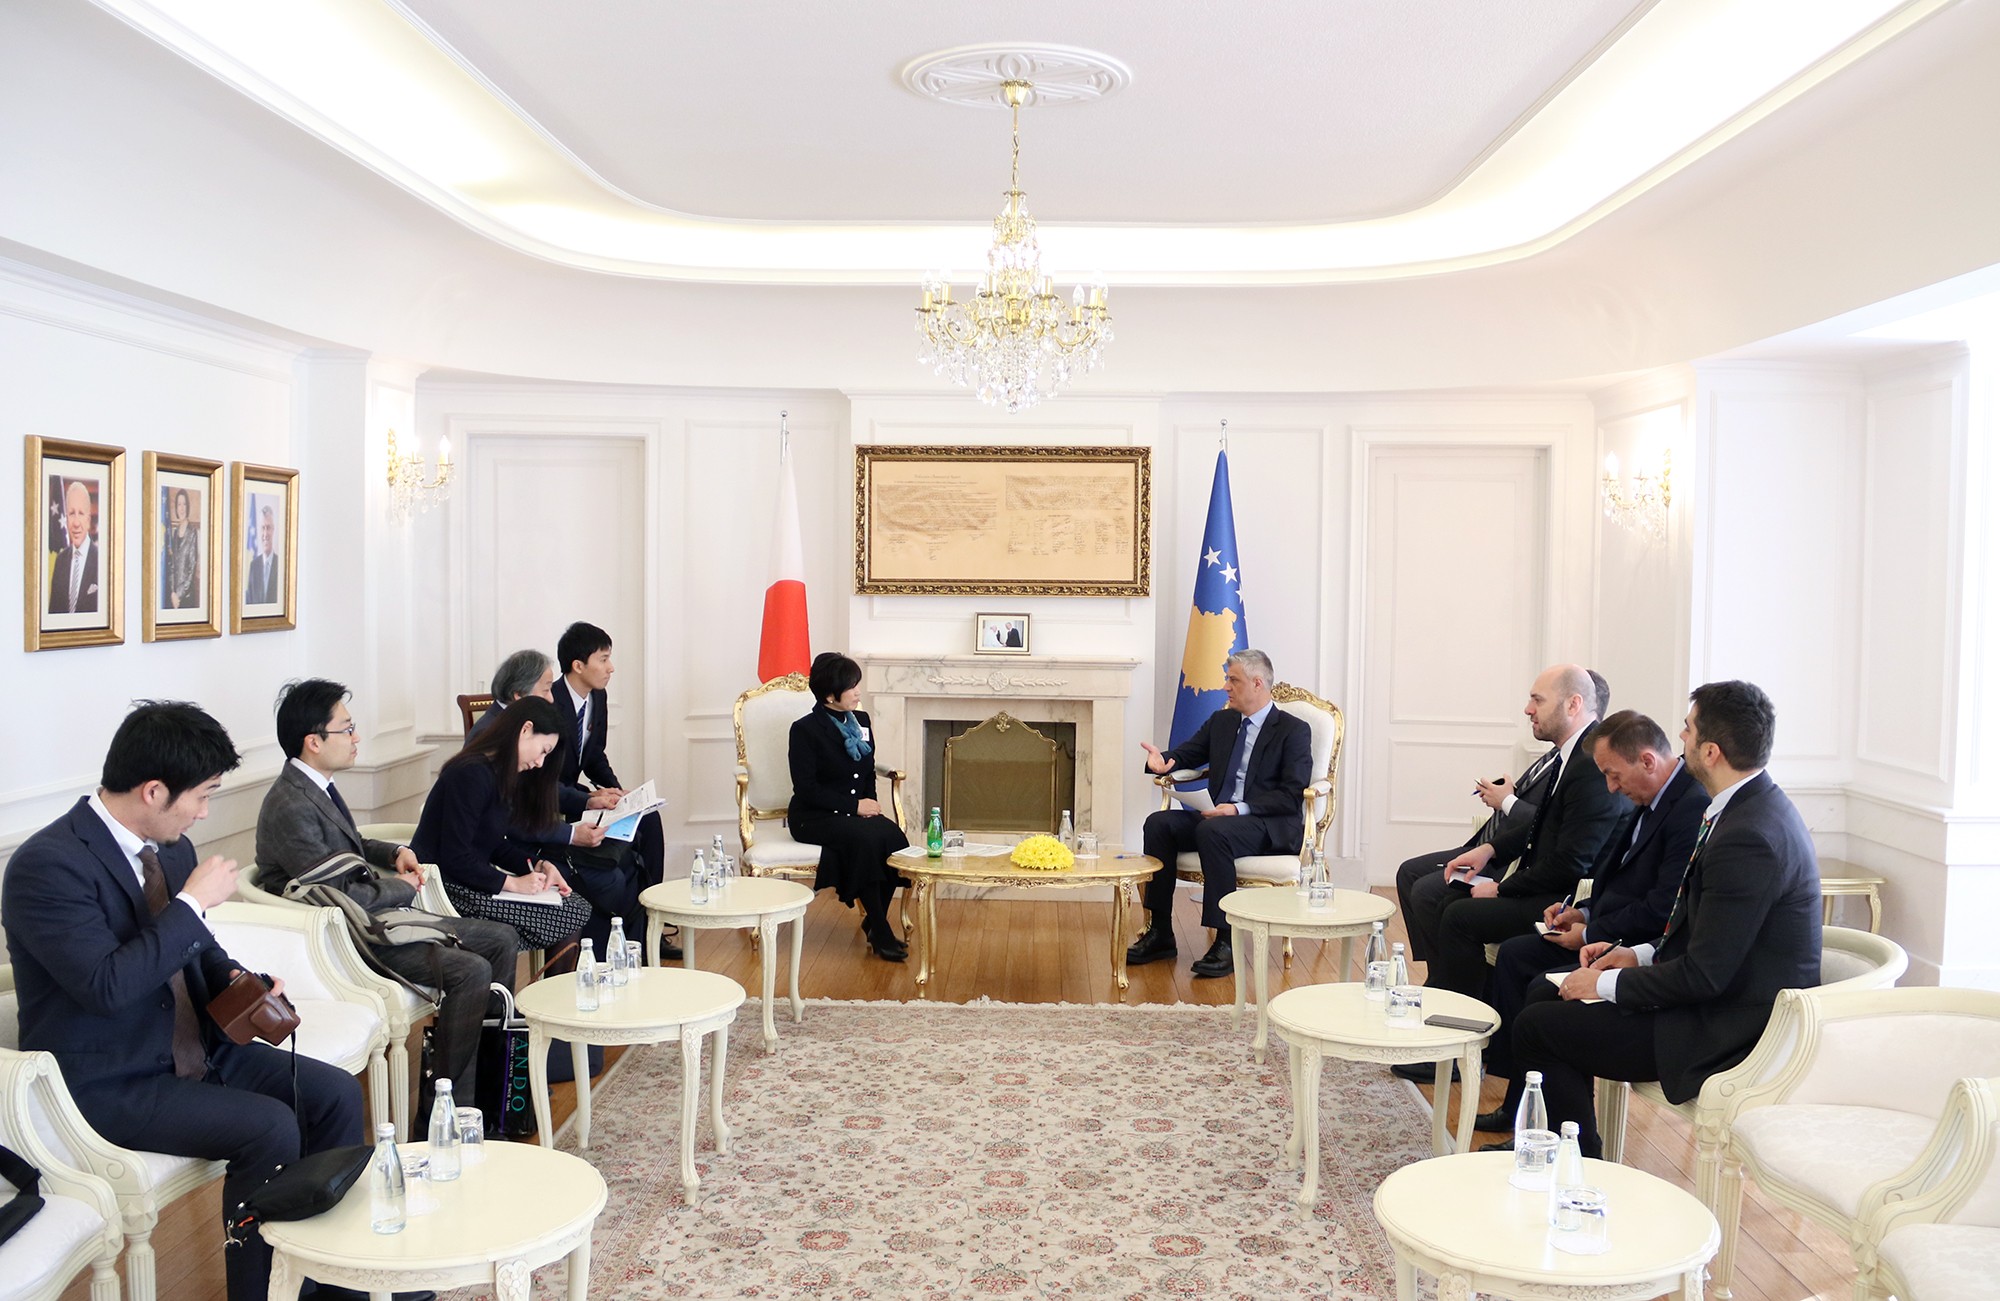 Presidenti Thaçi mirëpretë hapjen e ambasadës japoneze në Prishtinë 